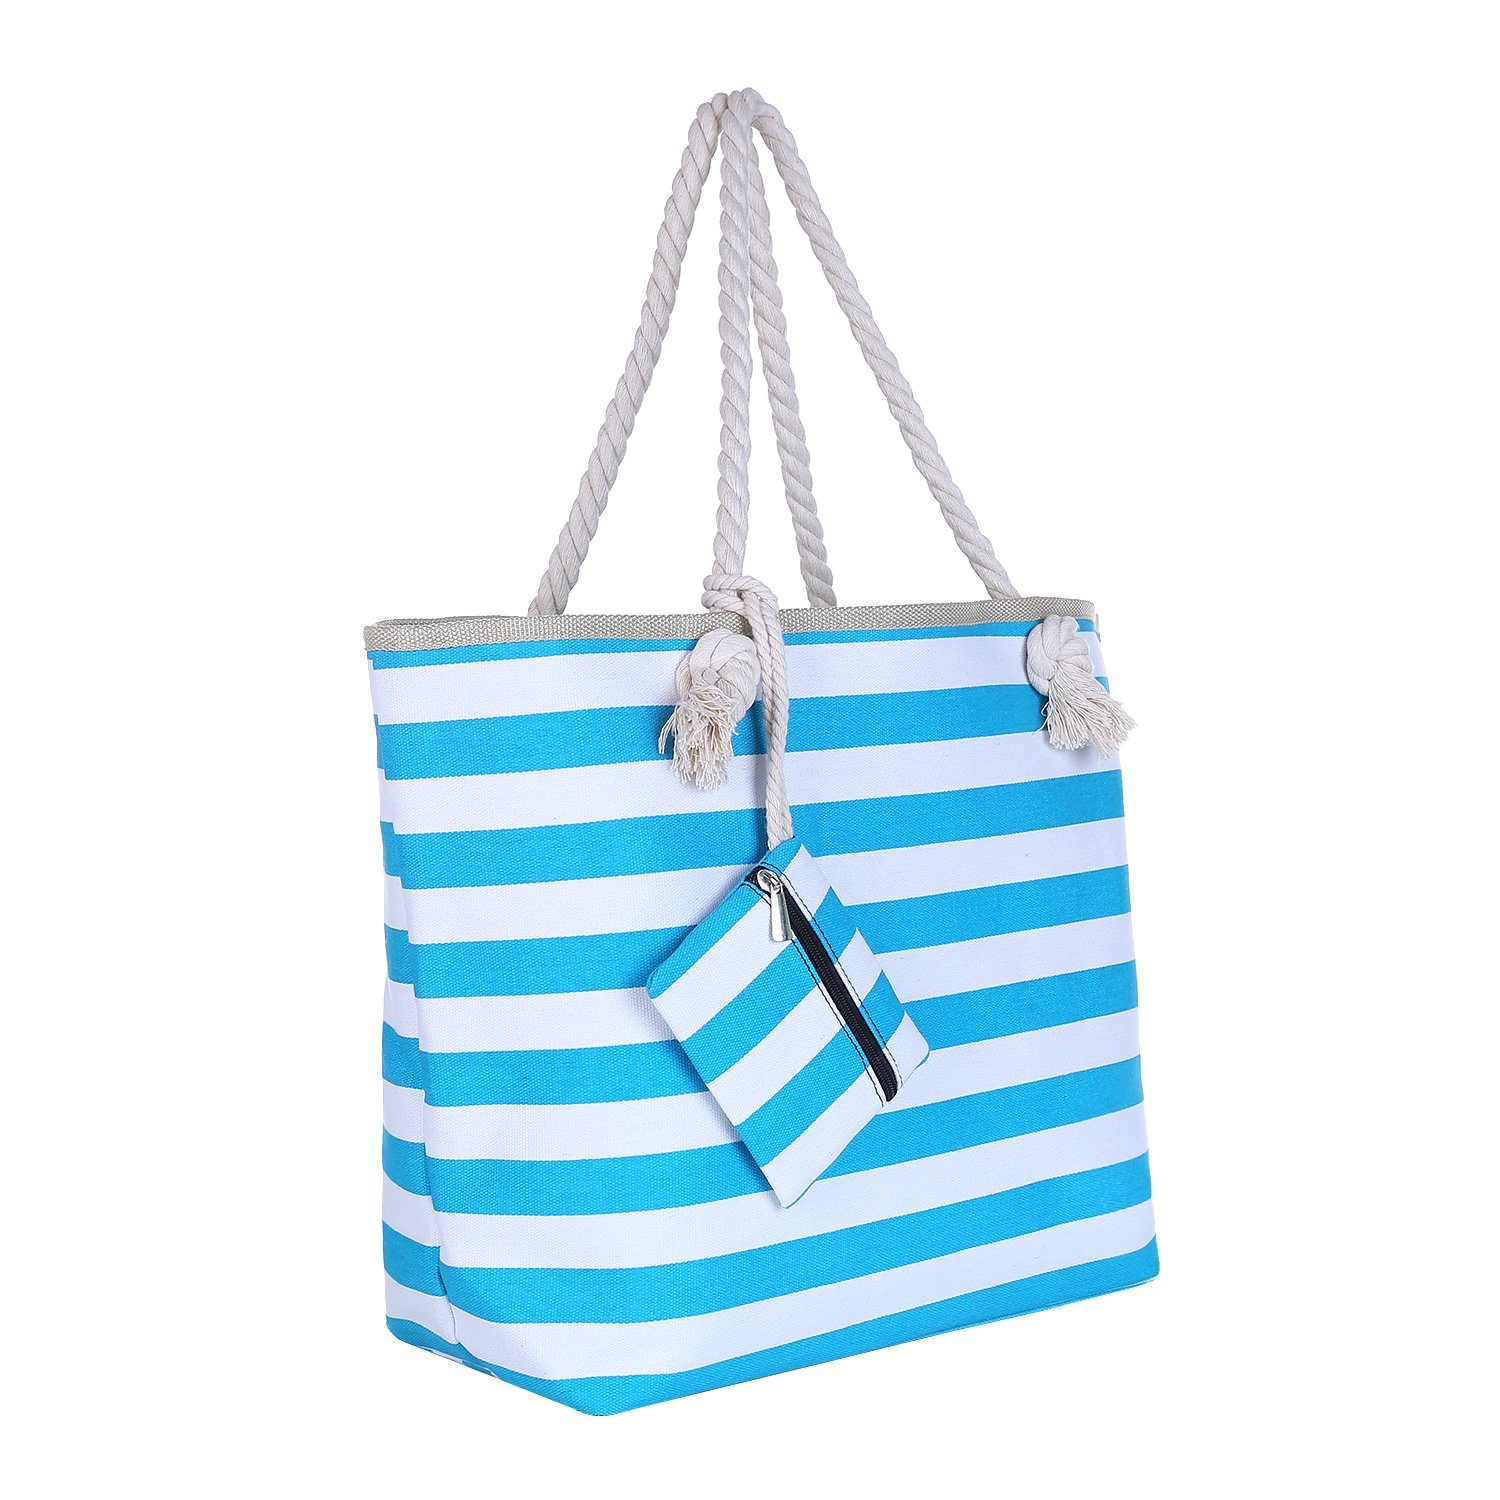 DonDon Strandtasche Shopper Schultertasche Beach Style (2-tlg), Große Strandtasche, mit Reißverschluss, tolle Motive türkis-Weiß